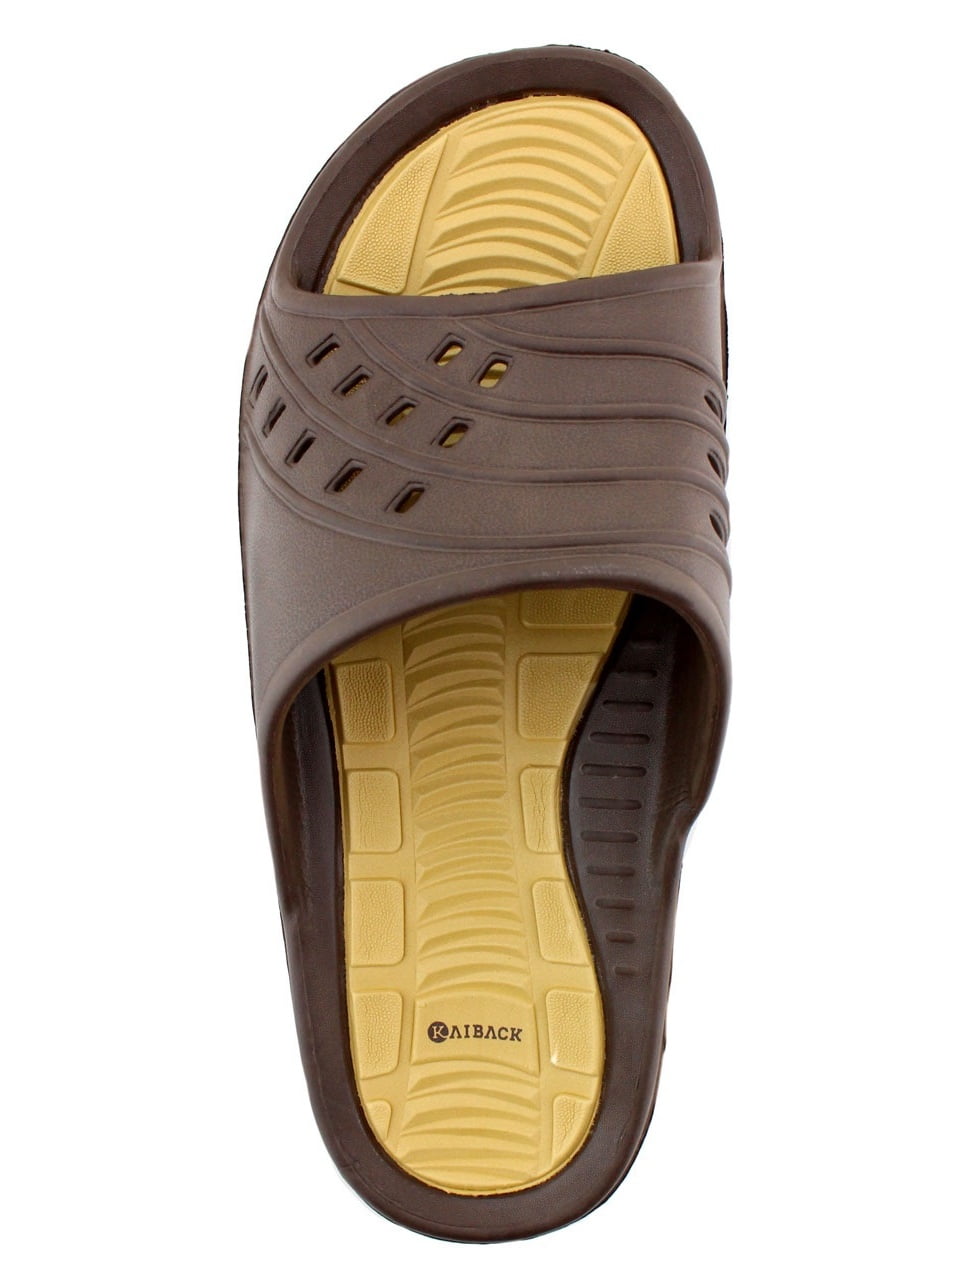 Kaiback Simple Slide Shower Sandal 